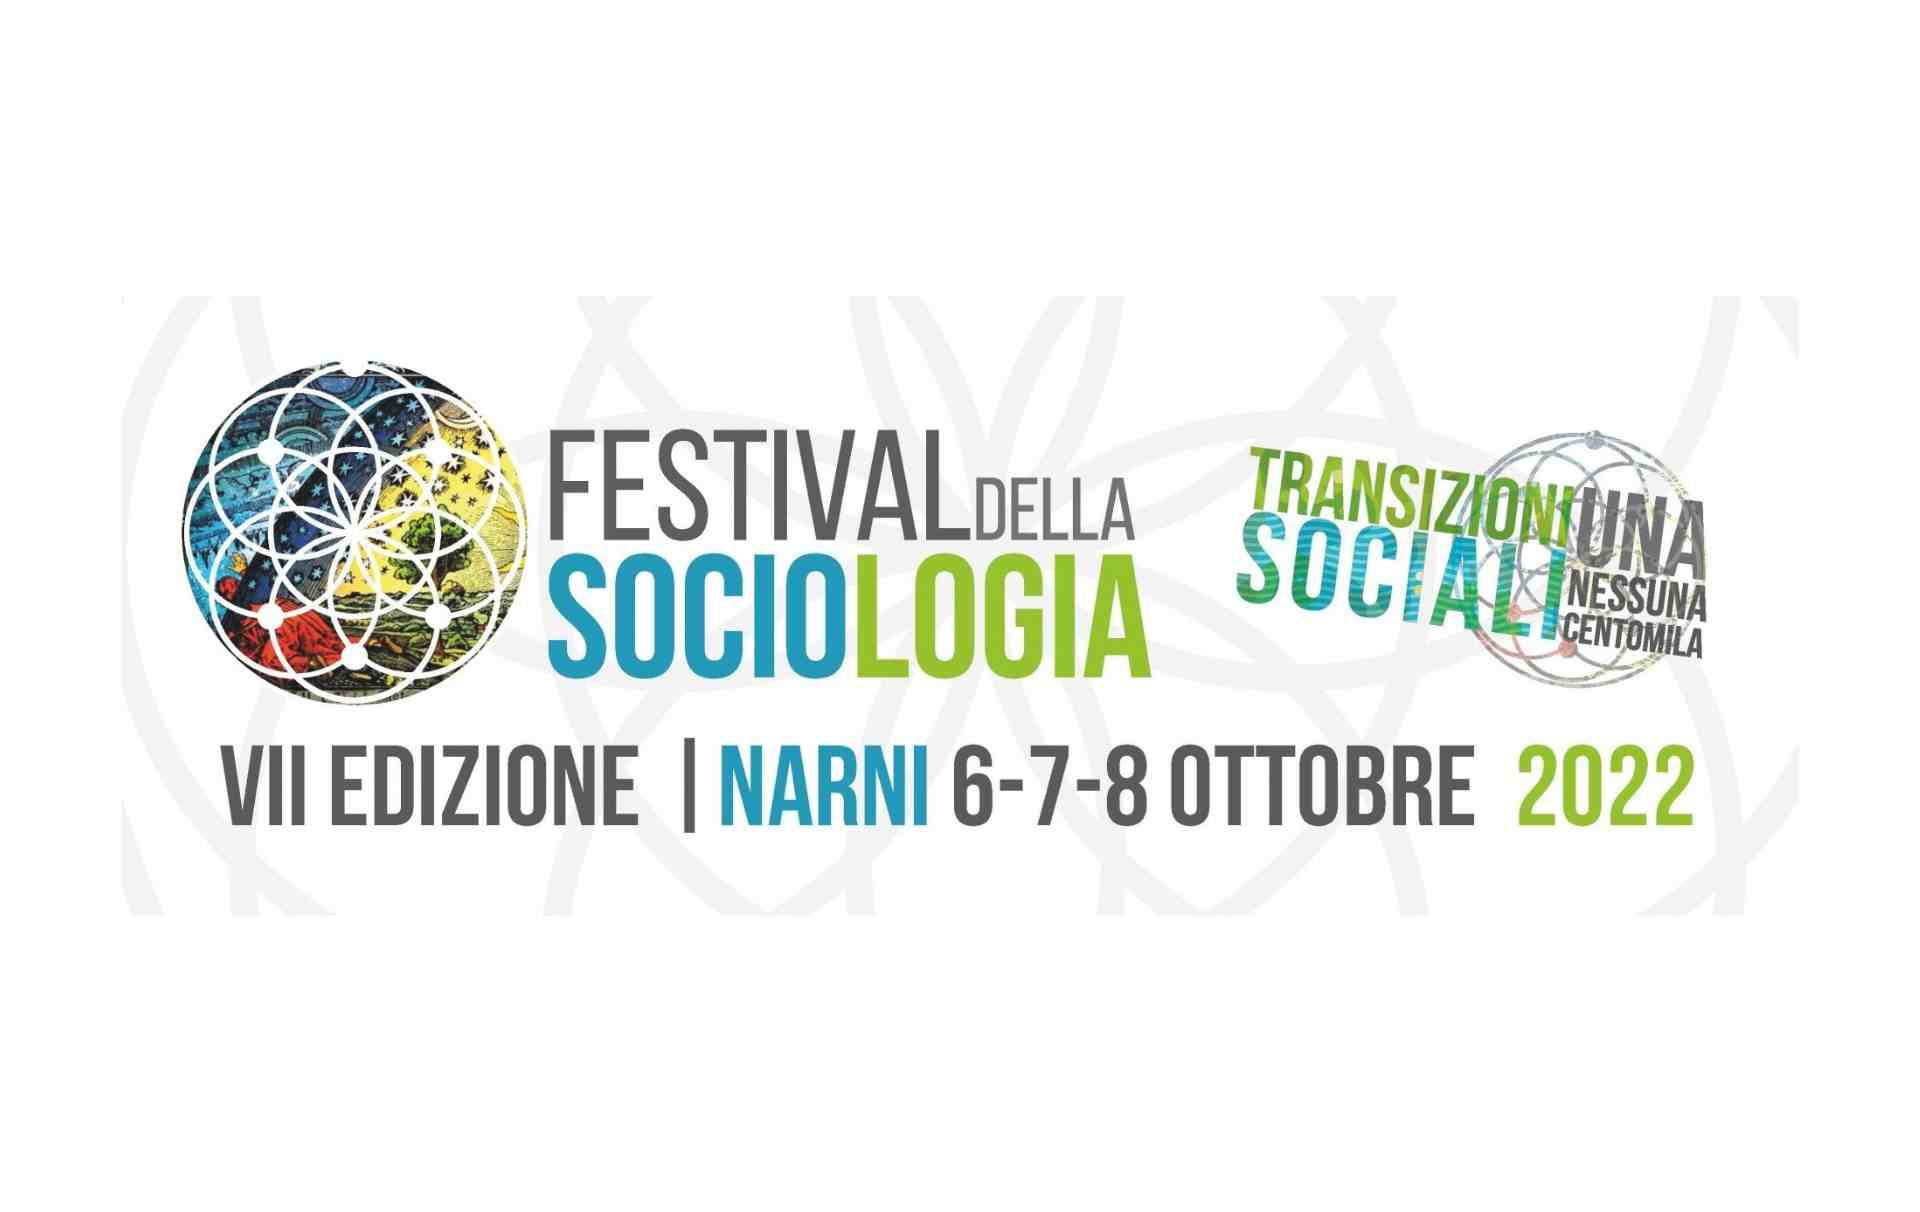 Cartellone del Festival della Sociologia 2022 a Narni